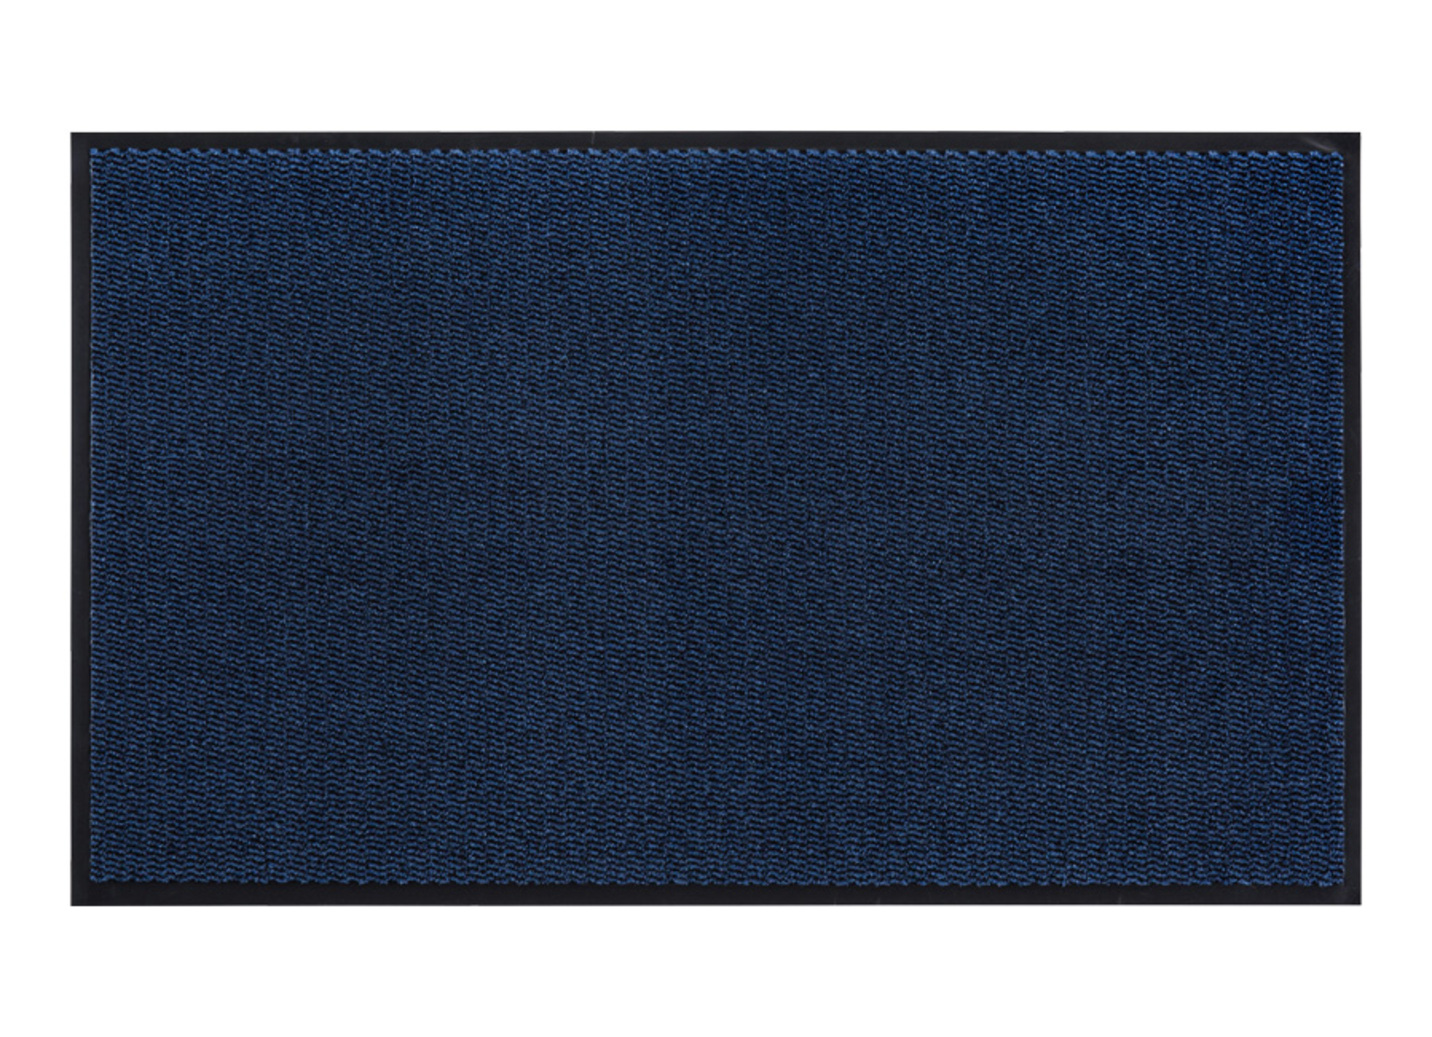 Andiamo Schmutzfangmatten für innen und außen, Größe 103 (60x 80 cm), Blau von BADER